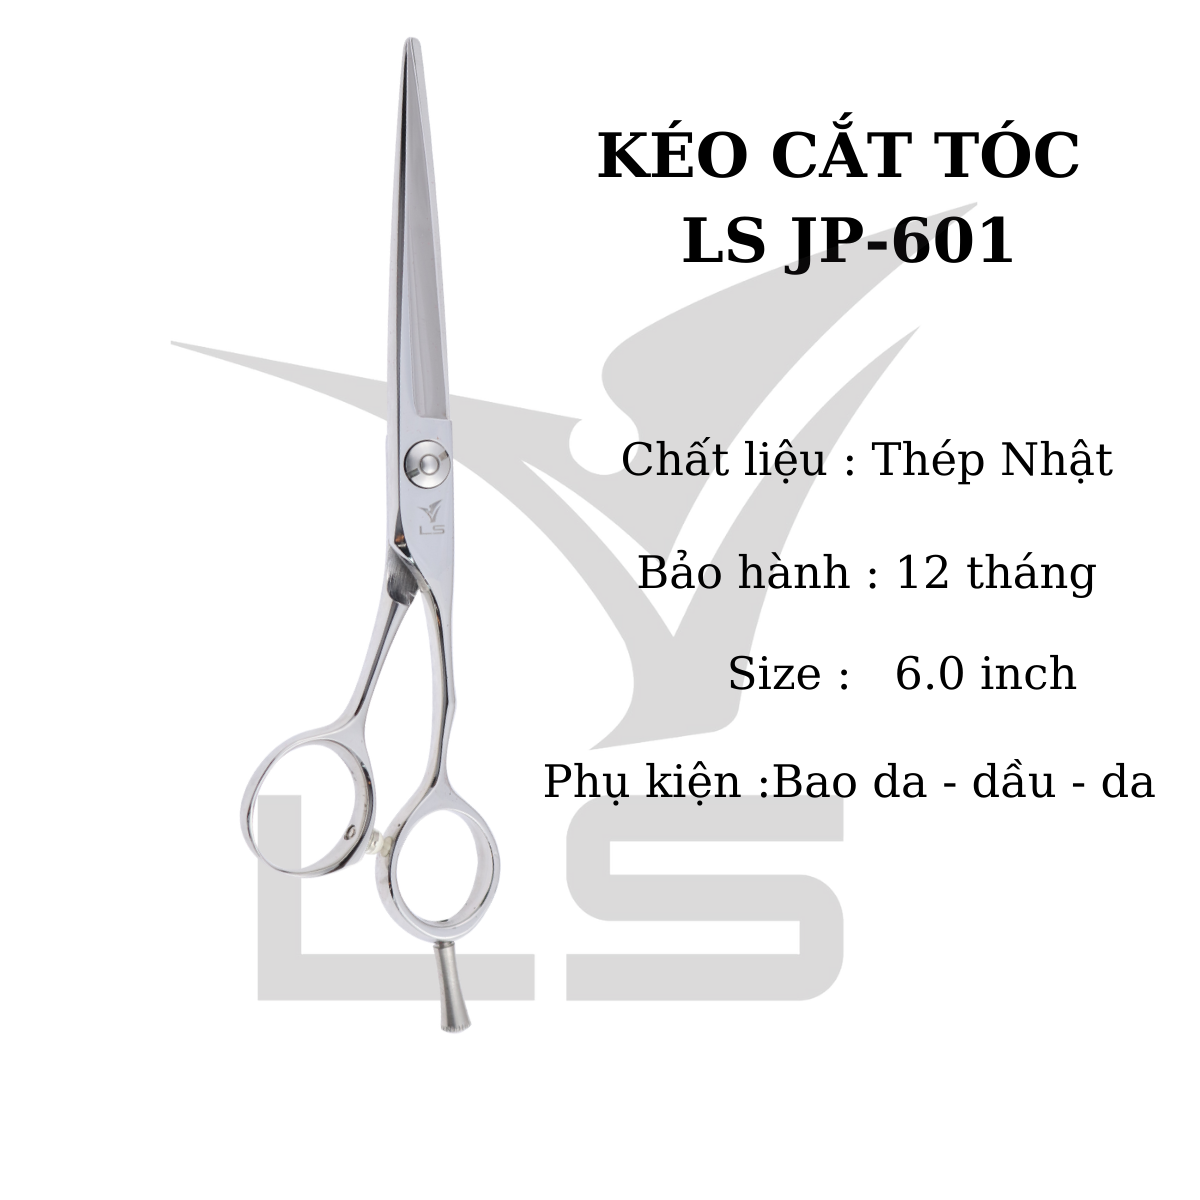 Kéo cắt tóc VIKO JP-601 Size 6.0 inhs HÀNG CHÍNH HÃNG